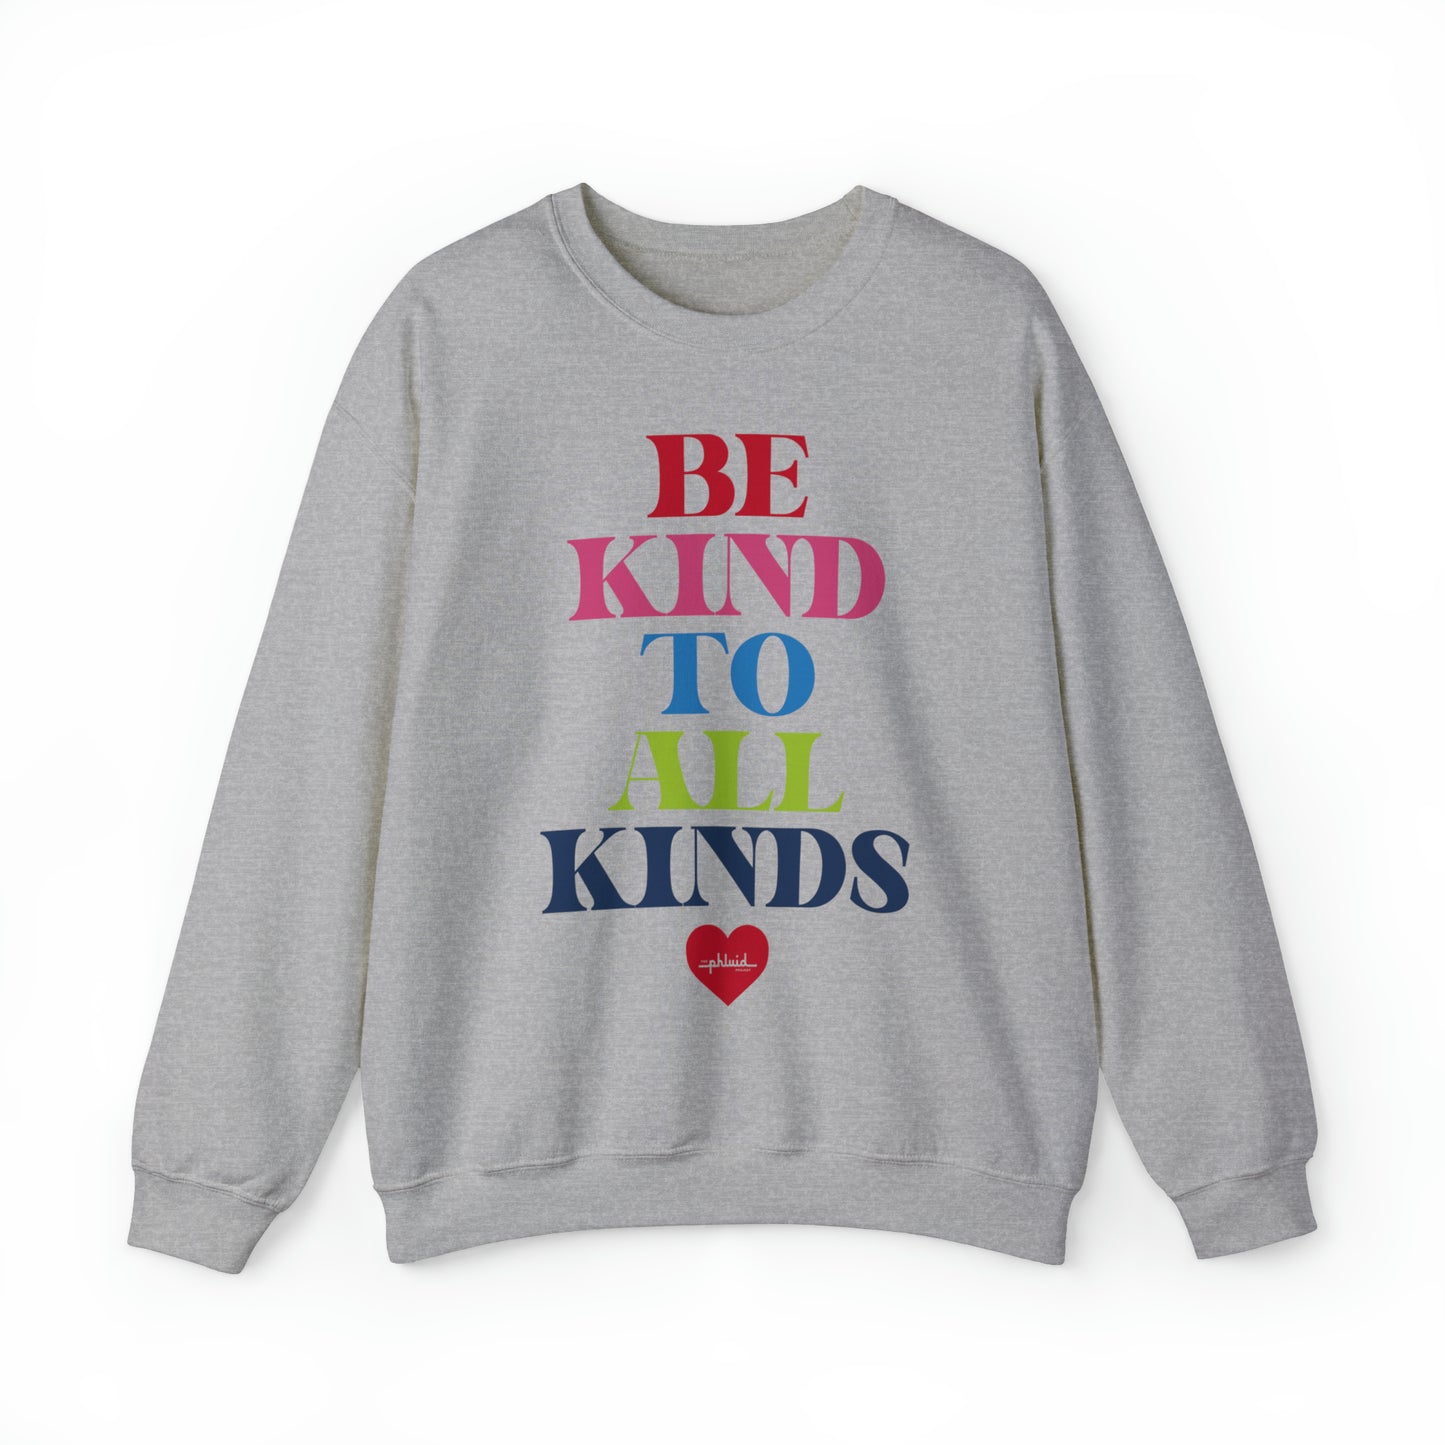 Be Kind To All Kinds Sweatshirt